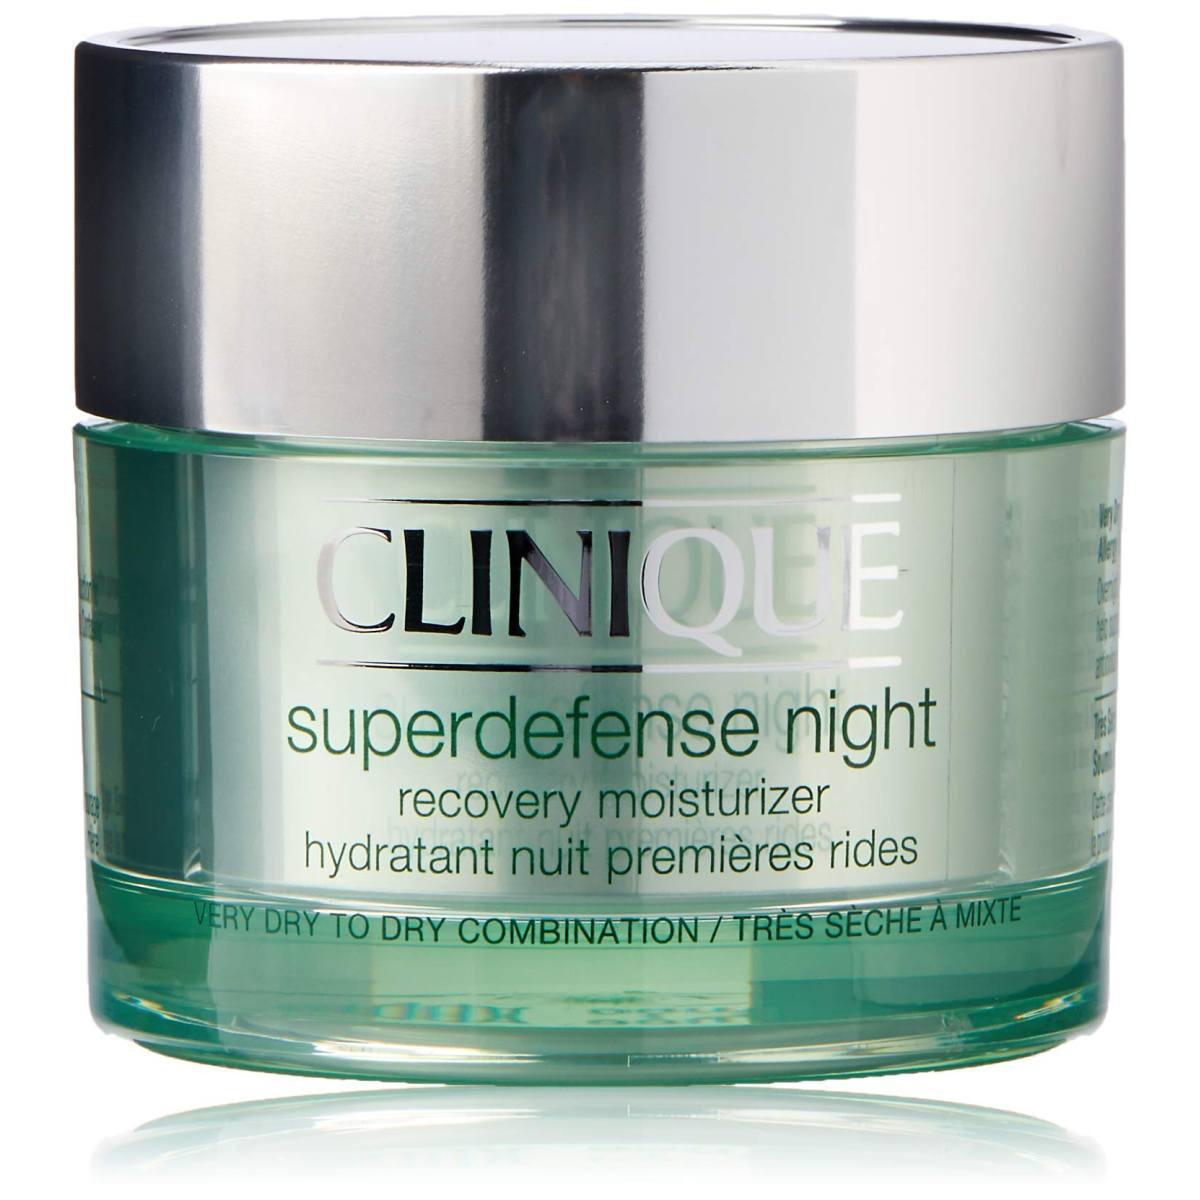 Superdefense night - idratante da notte prevenzione prime rughe - tipo di pelle i - ii 50 ml